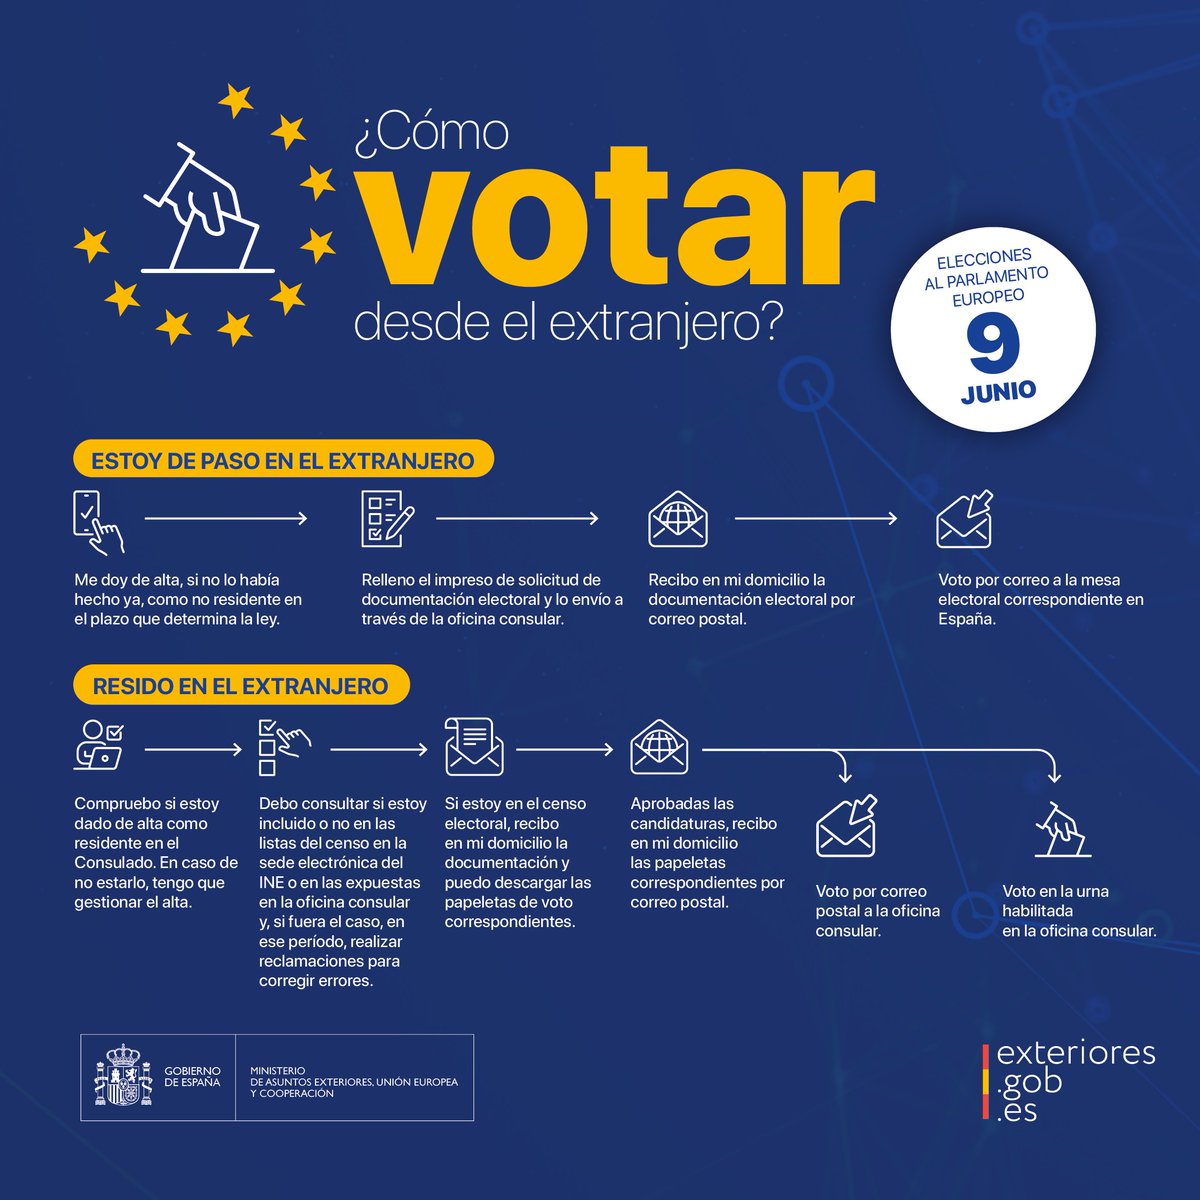 El #VotoExterior es un voto con garantías porque las cifras de los sobres remitidos por cada oficina consular, así como las cifras de los sobres recibidos por cada Junta Electoral, se publicarán inmediatamente después de finalizar el escrutinio. #EleccionesEuropeas #9J